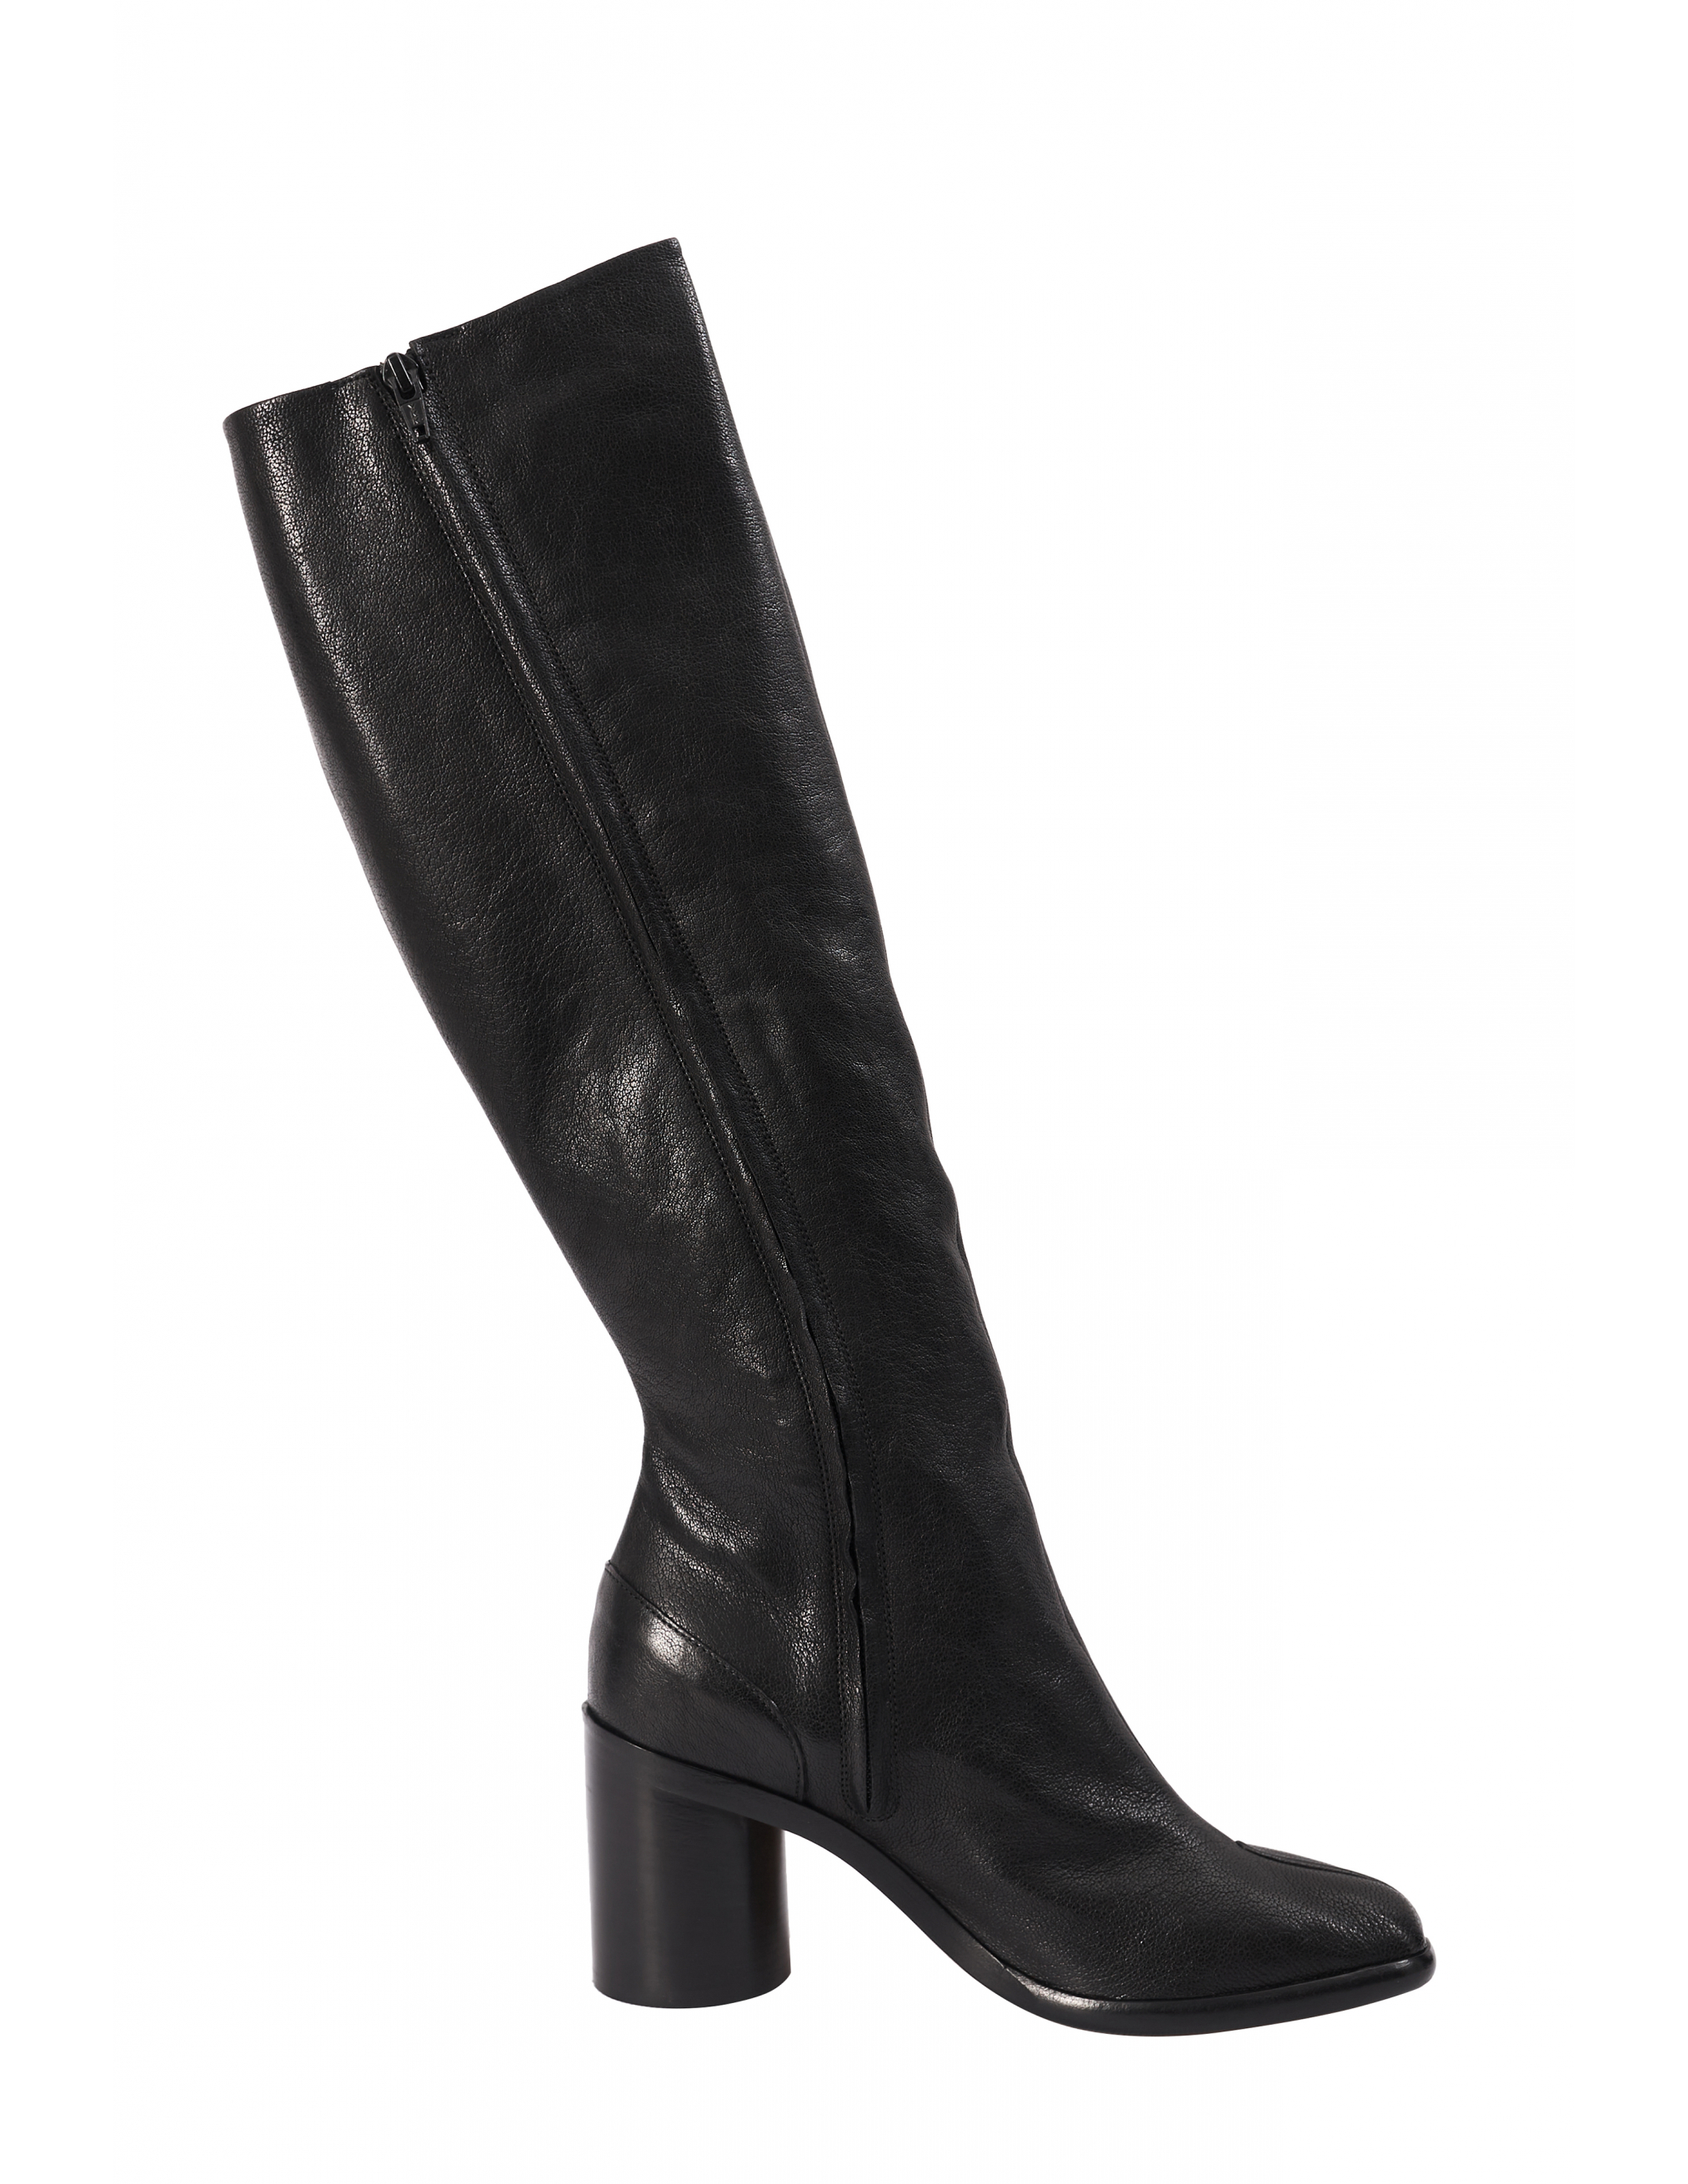 Черные кожаные сапоги Tabi Maison Margiela S34WW0057/P3753/T8013, размер 41;40;39;38;36 S34WW0057/P3753/T8013 - фото 5